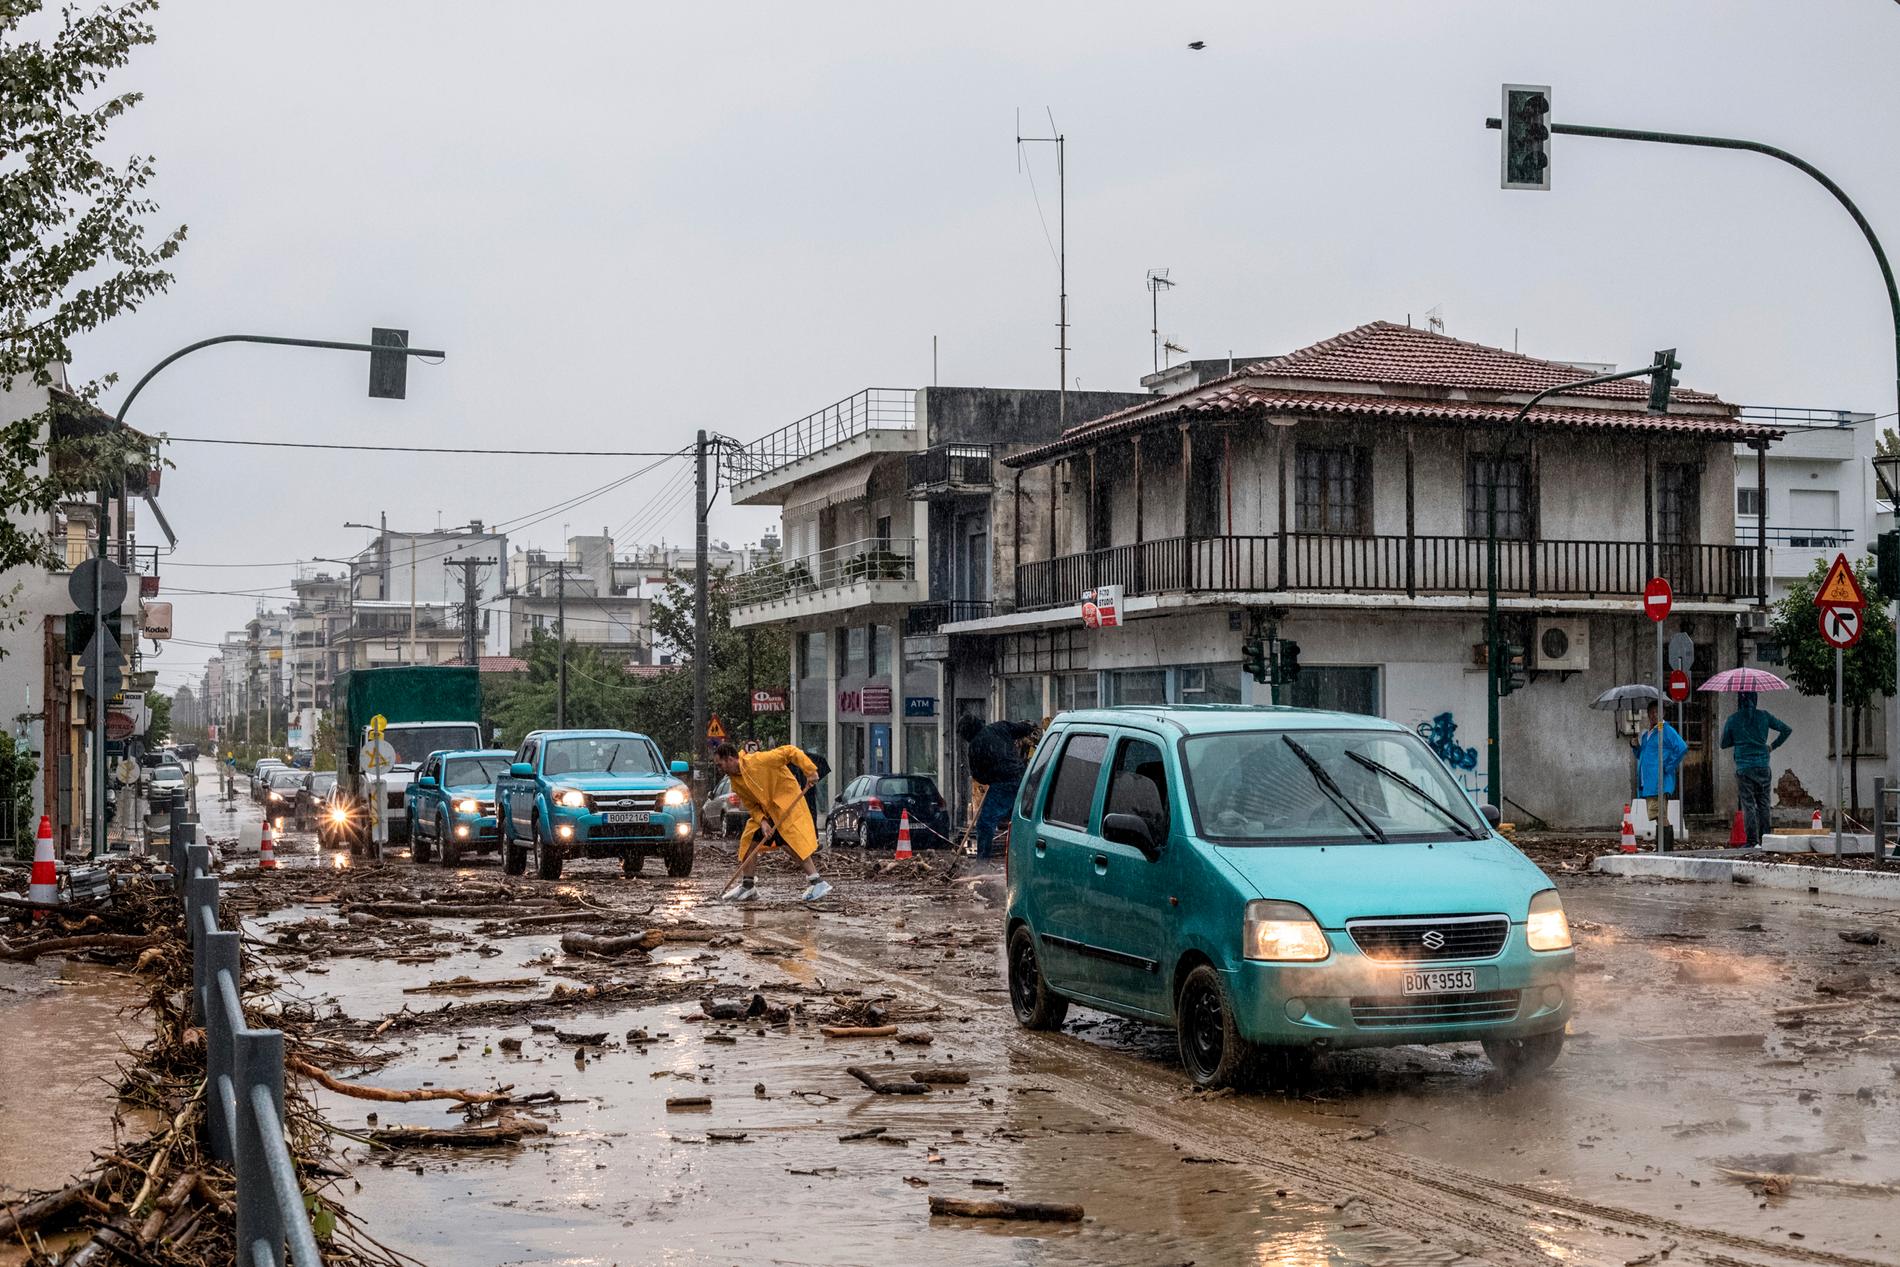 Översvämningarna har dragit med sig mängder av bråte bland annat i staden Volos. Flera bilar har svepts med ut i havet.